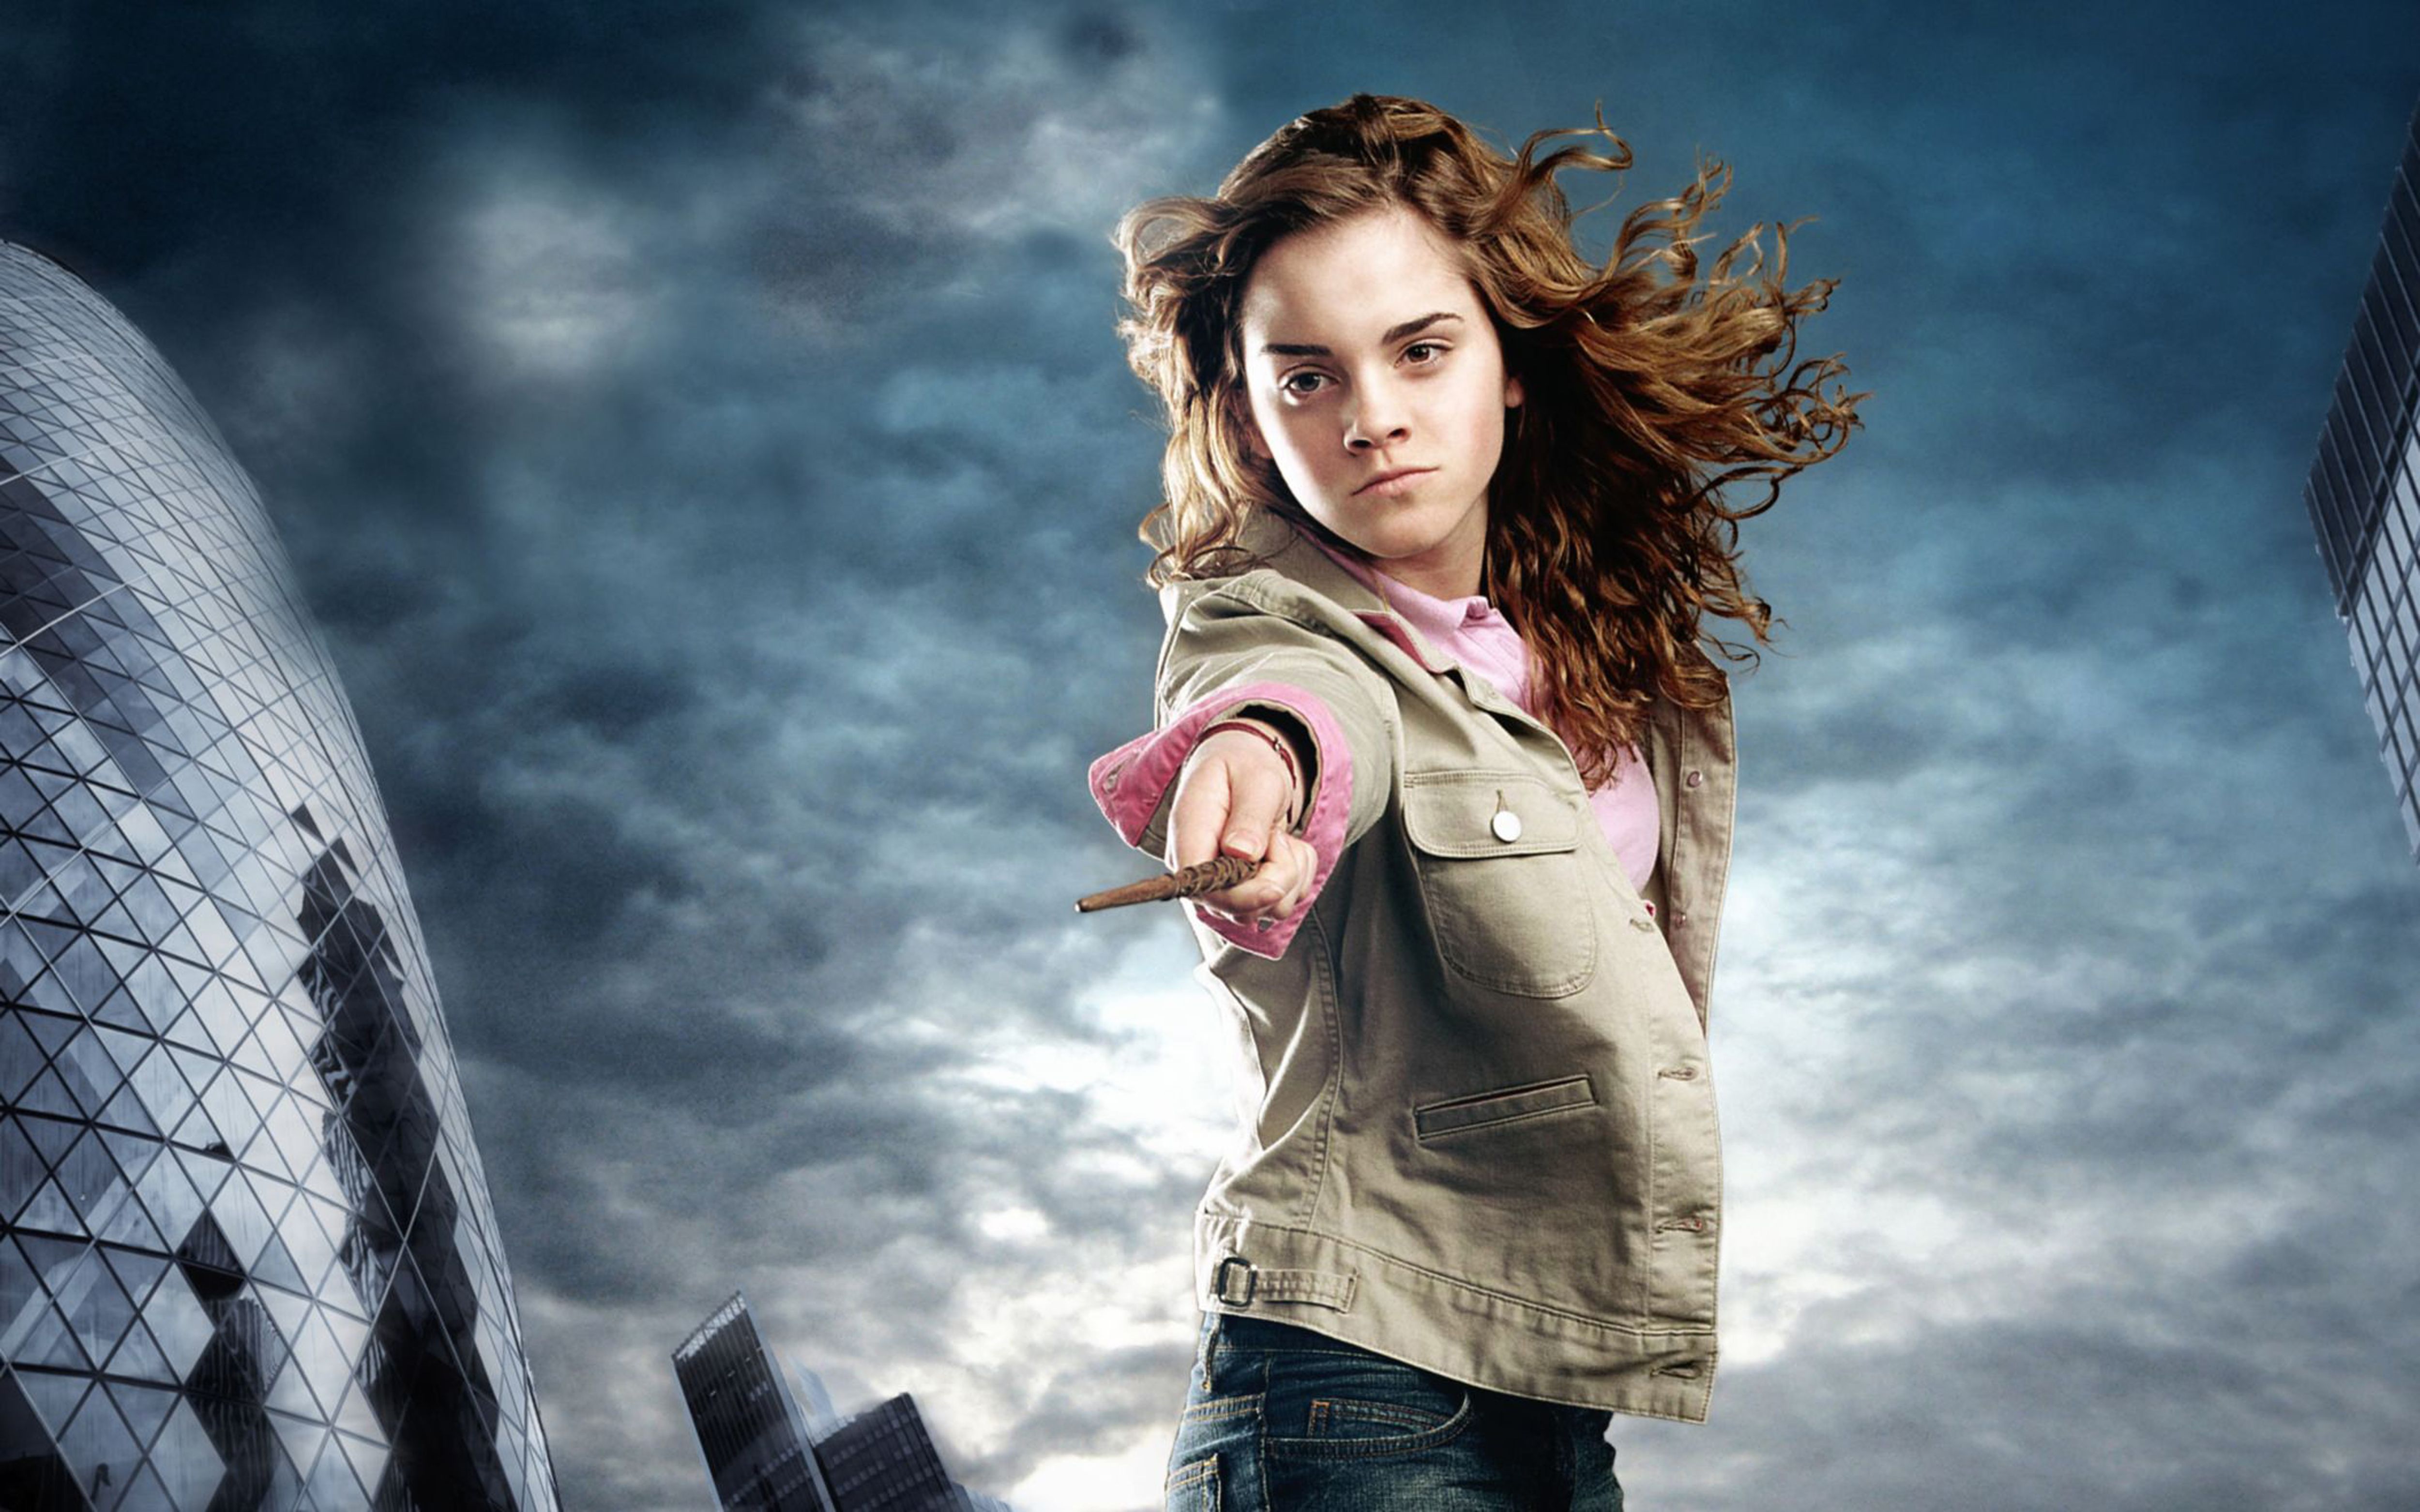 Hermione Granger Emma Watson Wallpaper #HermioneGranger #Hermione # EmmaWatson #HarryPotter. Emma watson wallpaper, Emma watson image, Emma watson